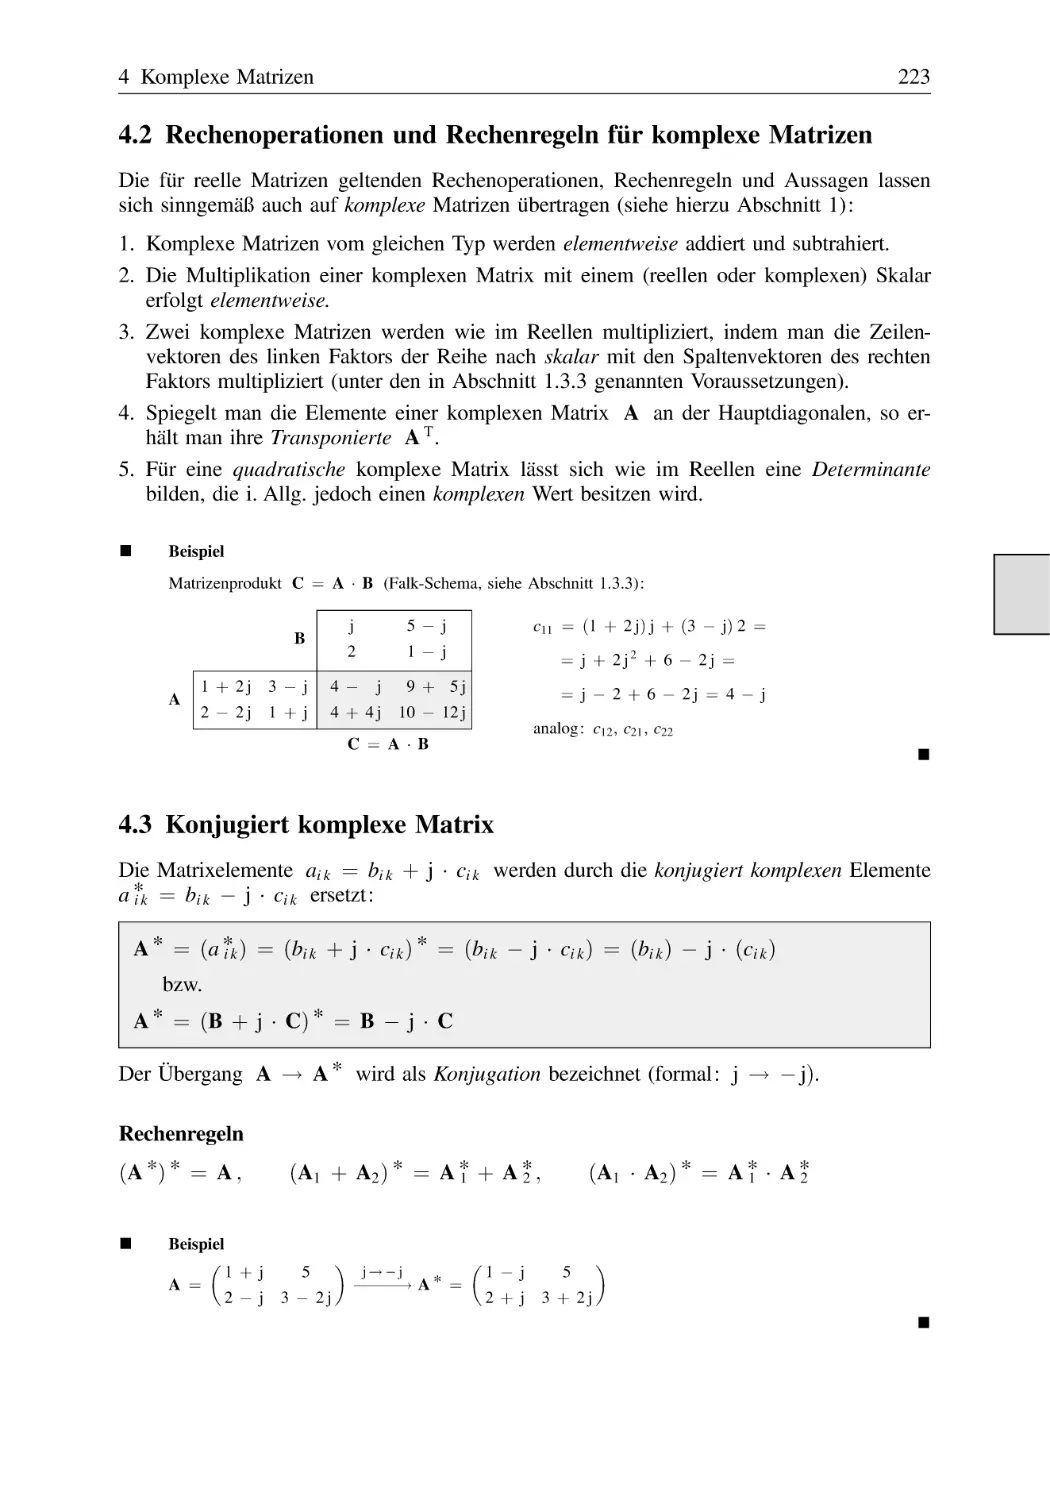 4.2 Rechenoperationen und Rechenregeln für komplexe Matrizen
4.3 Konjugiert komplexe Matrix